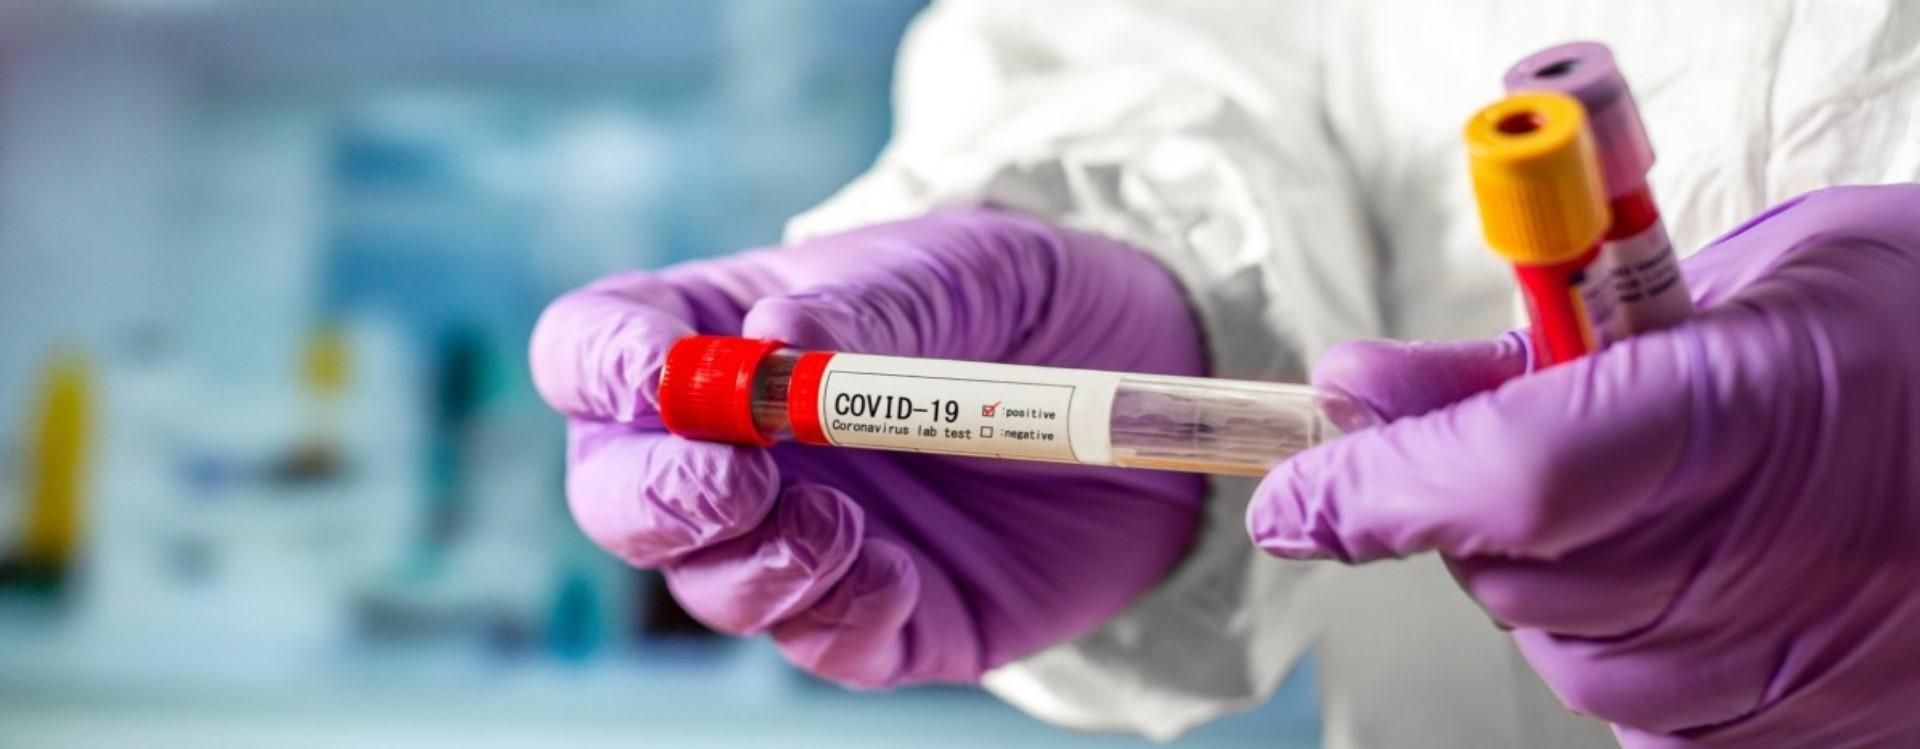 Захворюваність на COVID-19 в Україні висока навіть після вихідних - Гарячі новини - Новини Здоров’я